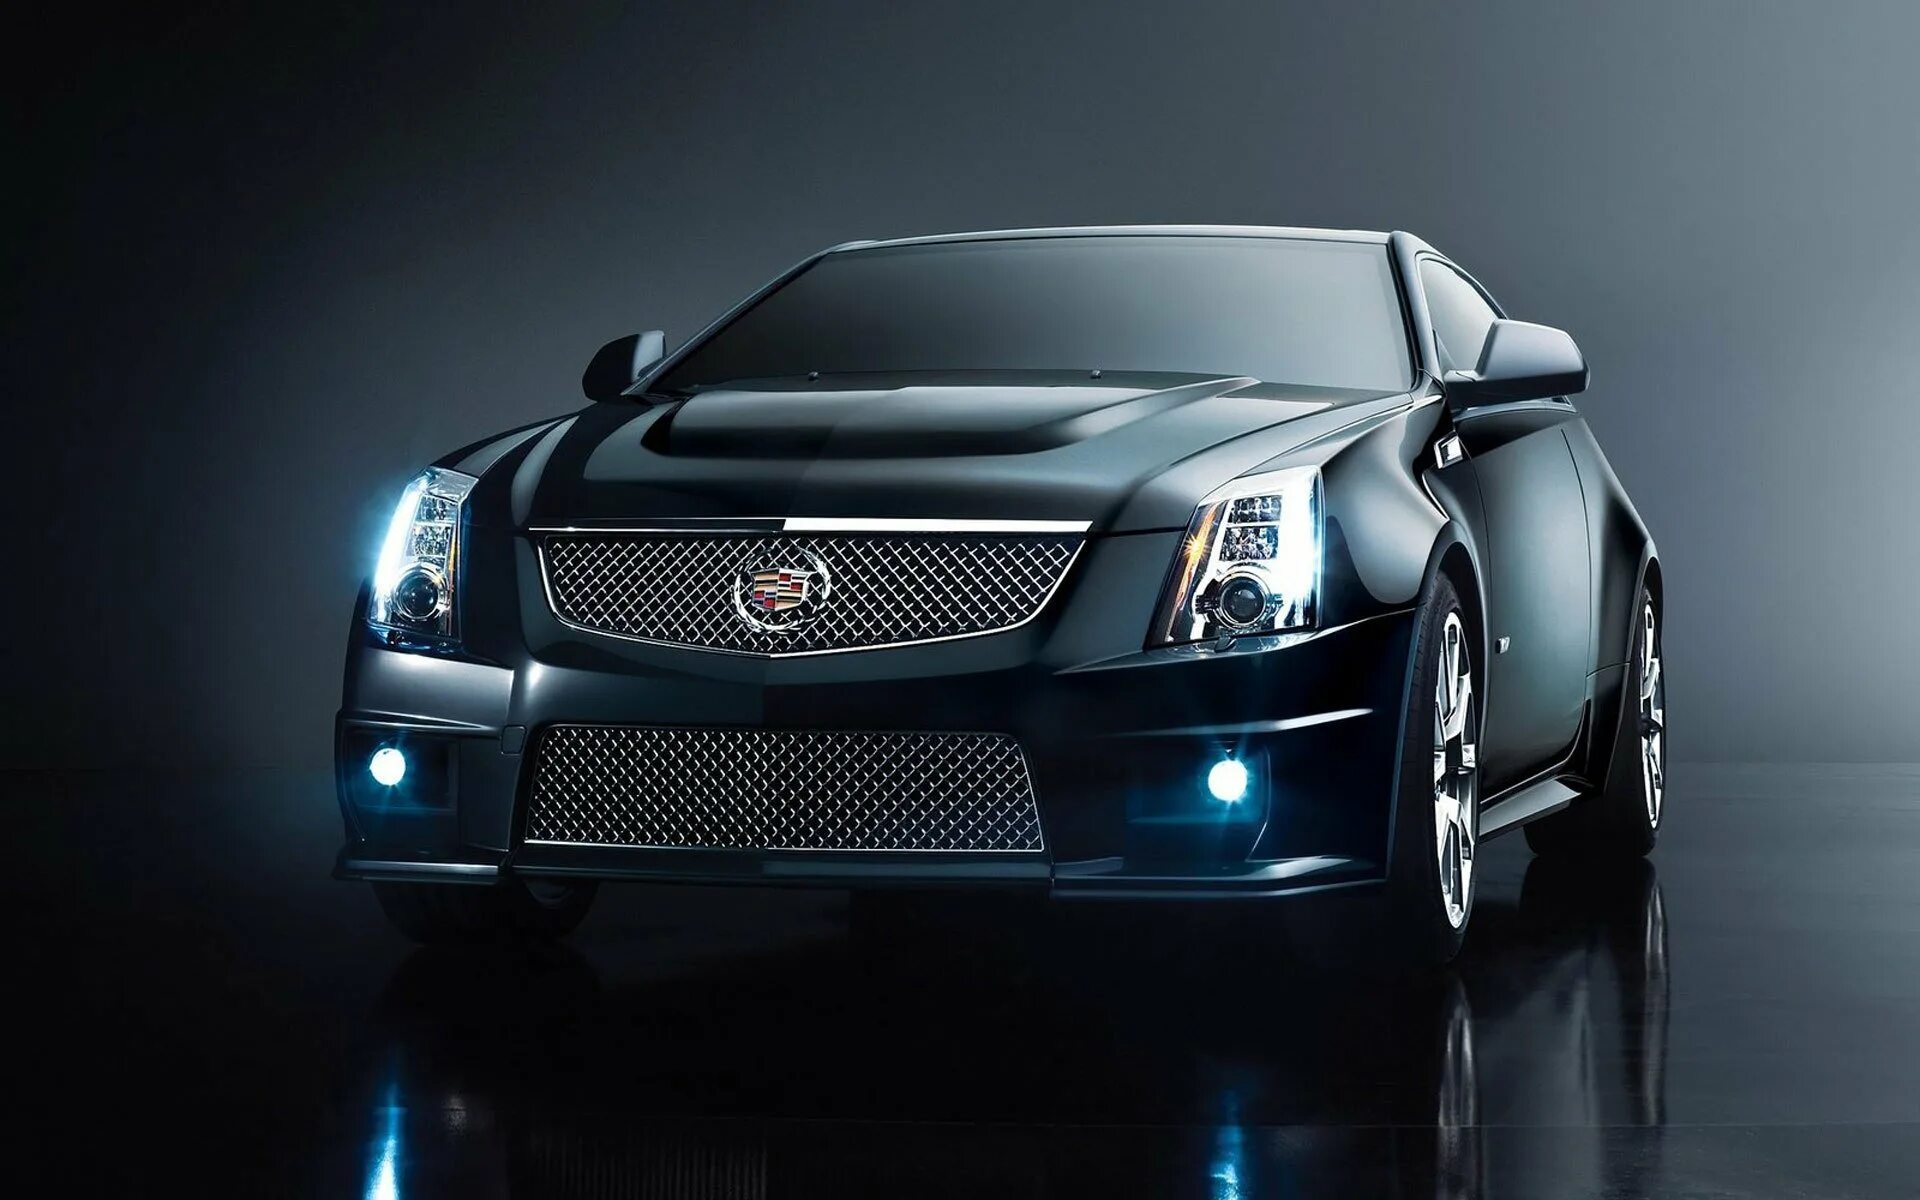 Avto c. Cadillac CTS V 2011. Cadillac CTS-V 2009. Машинки Кадиллак CTS V. Cadillac CTS V Coupe.